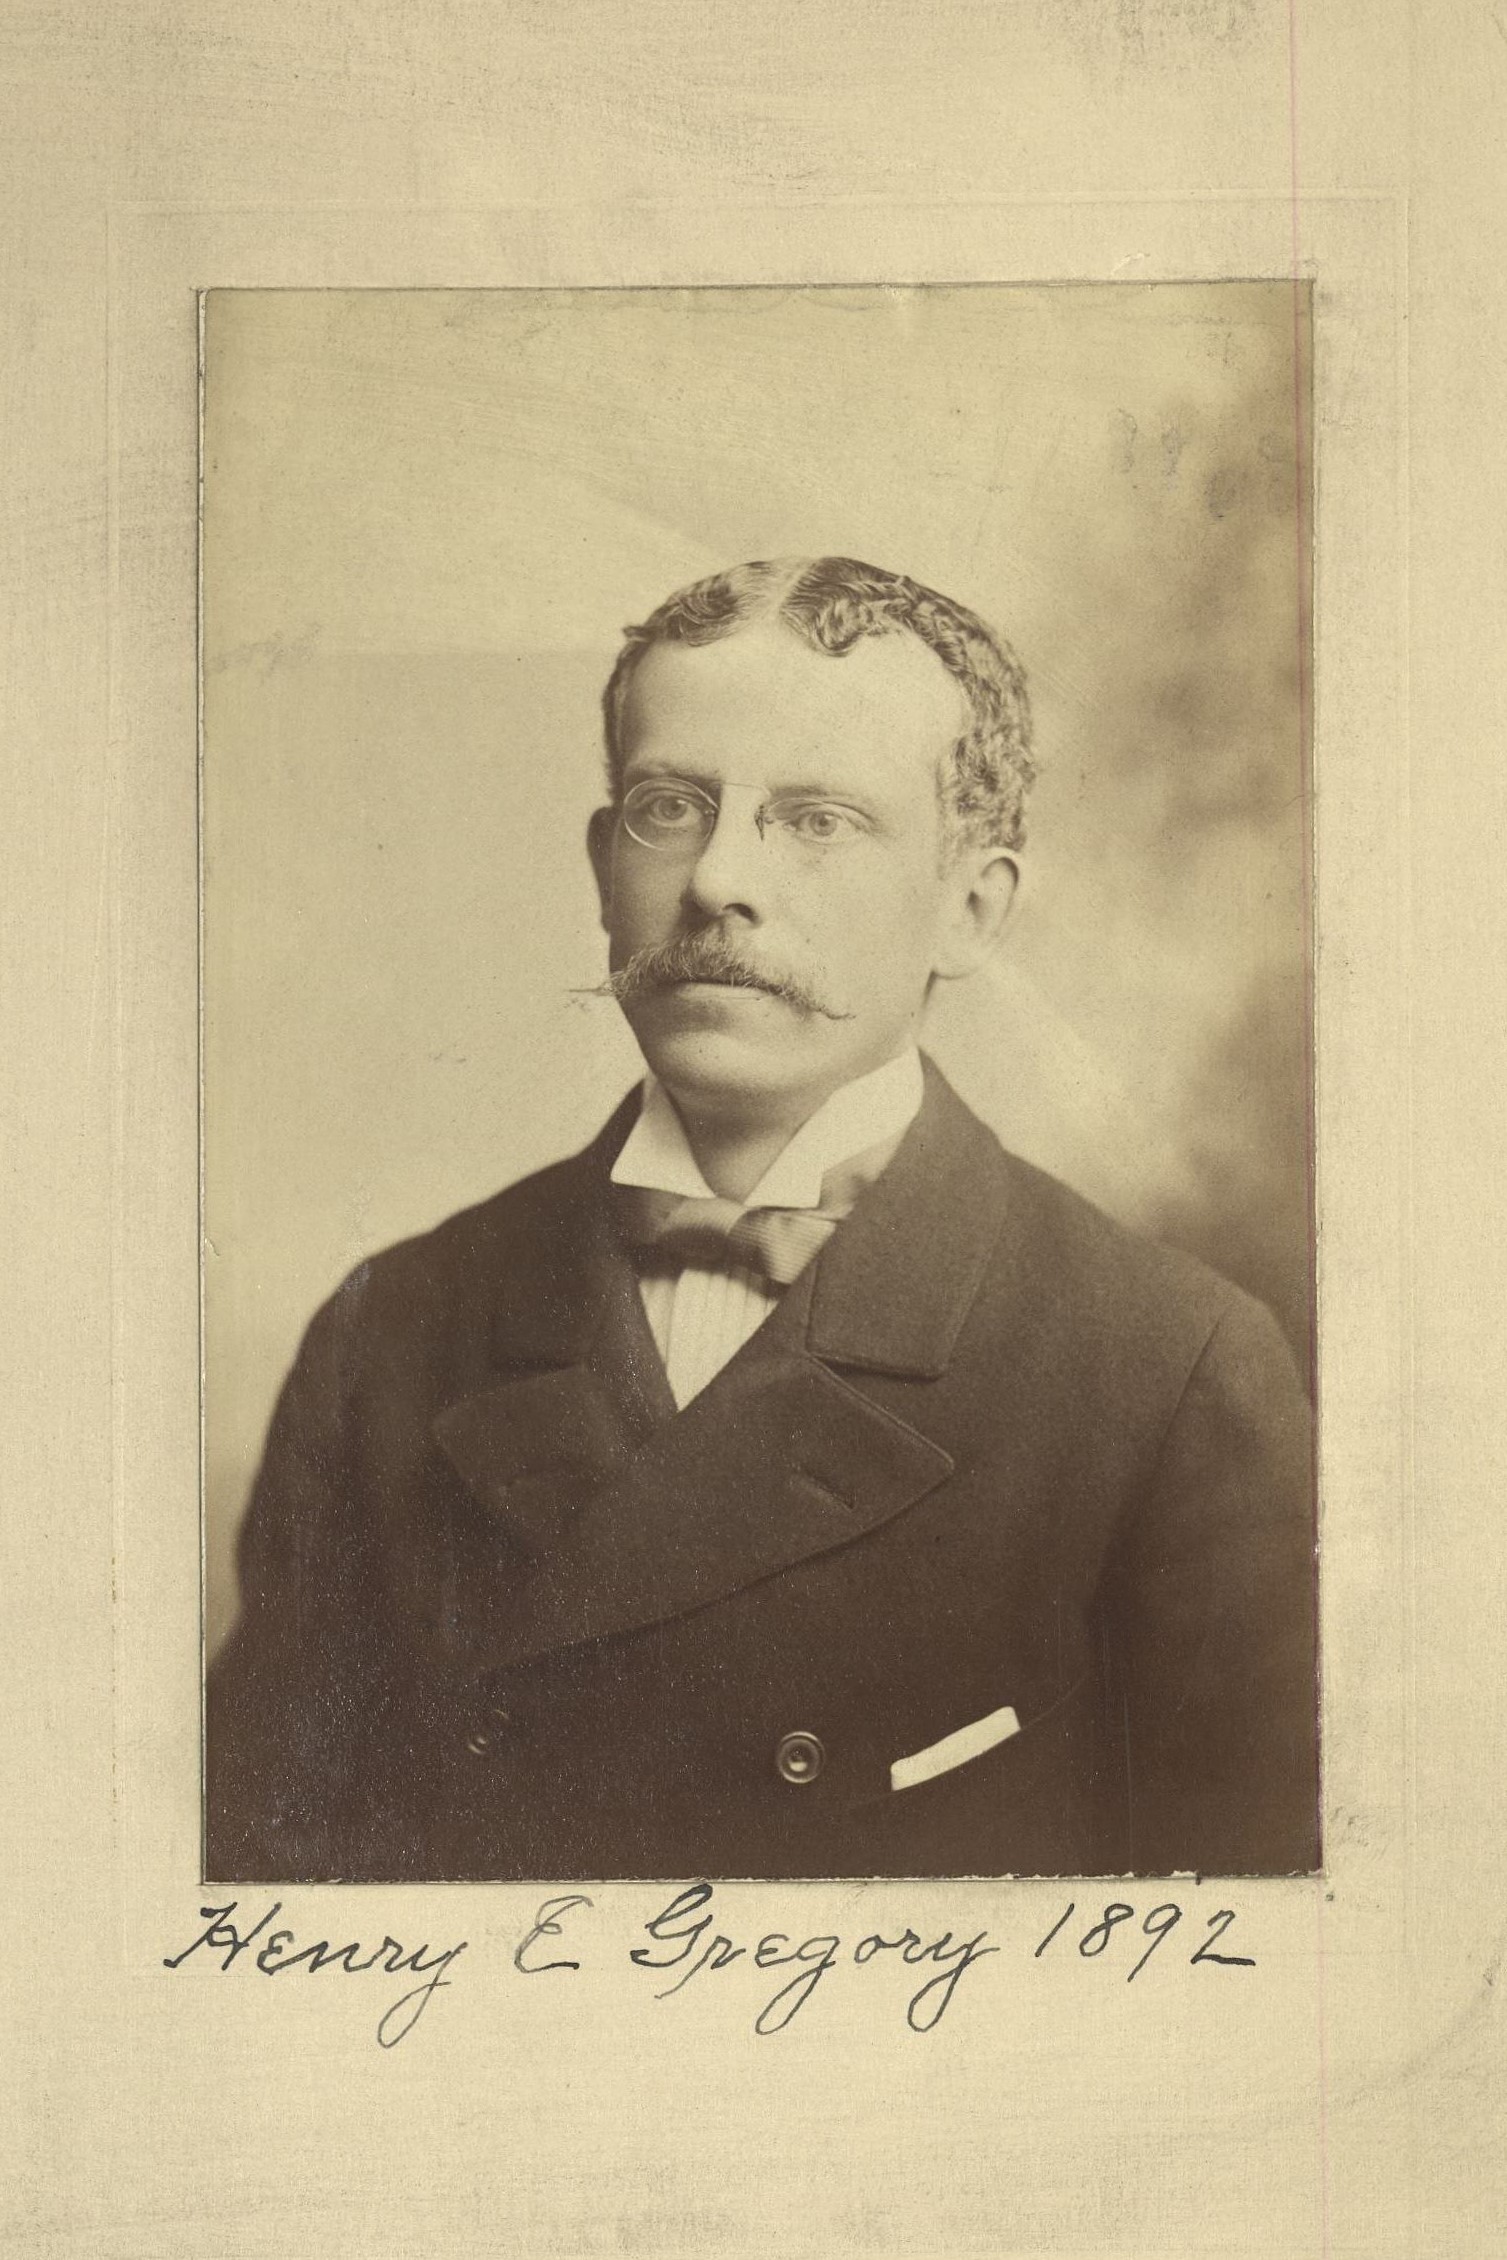 Member portrait of Henry E. Gregory